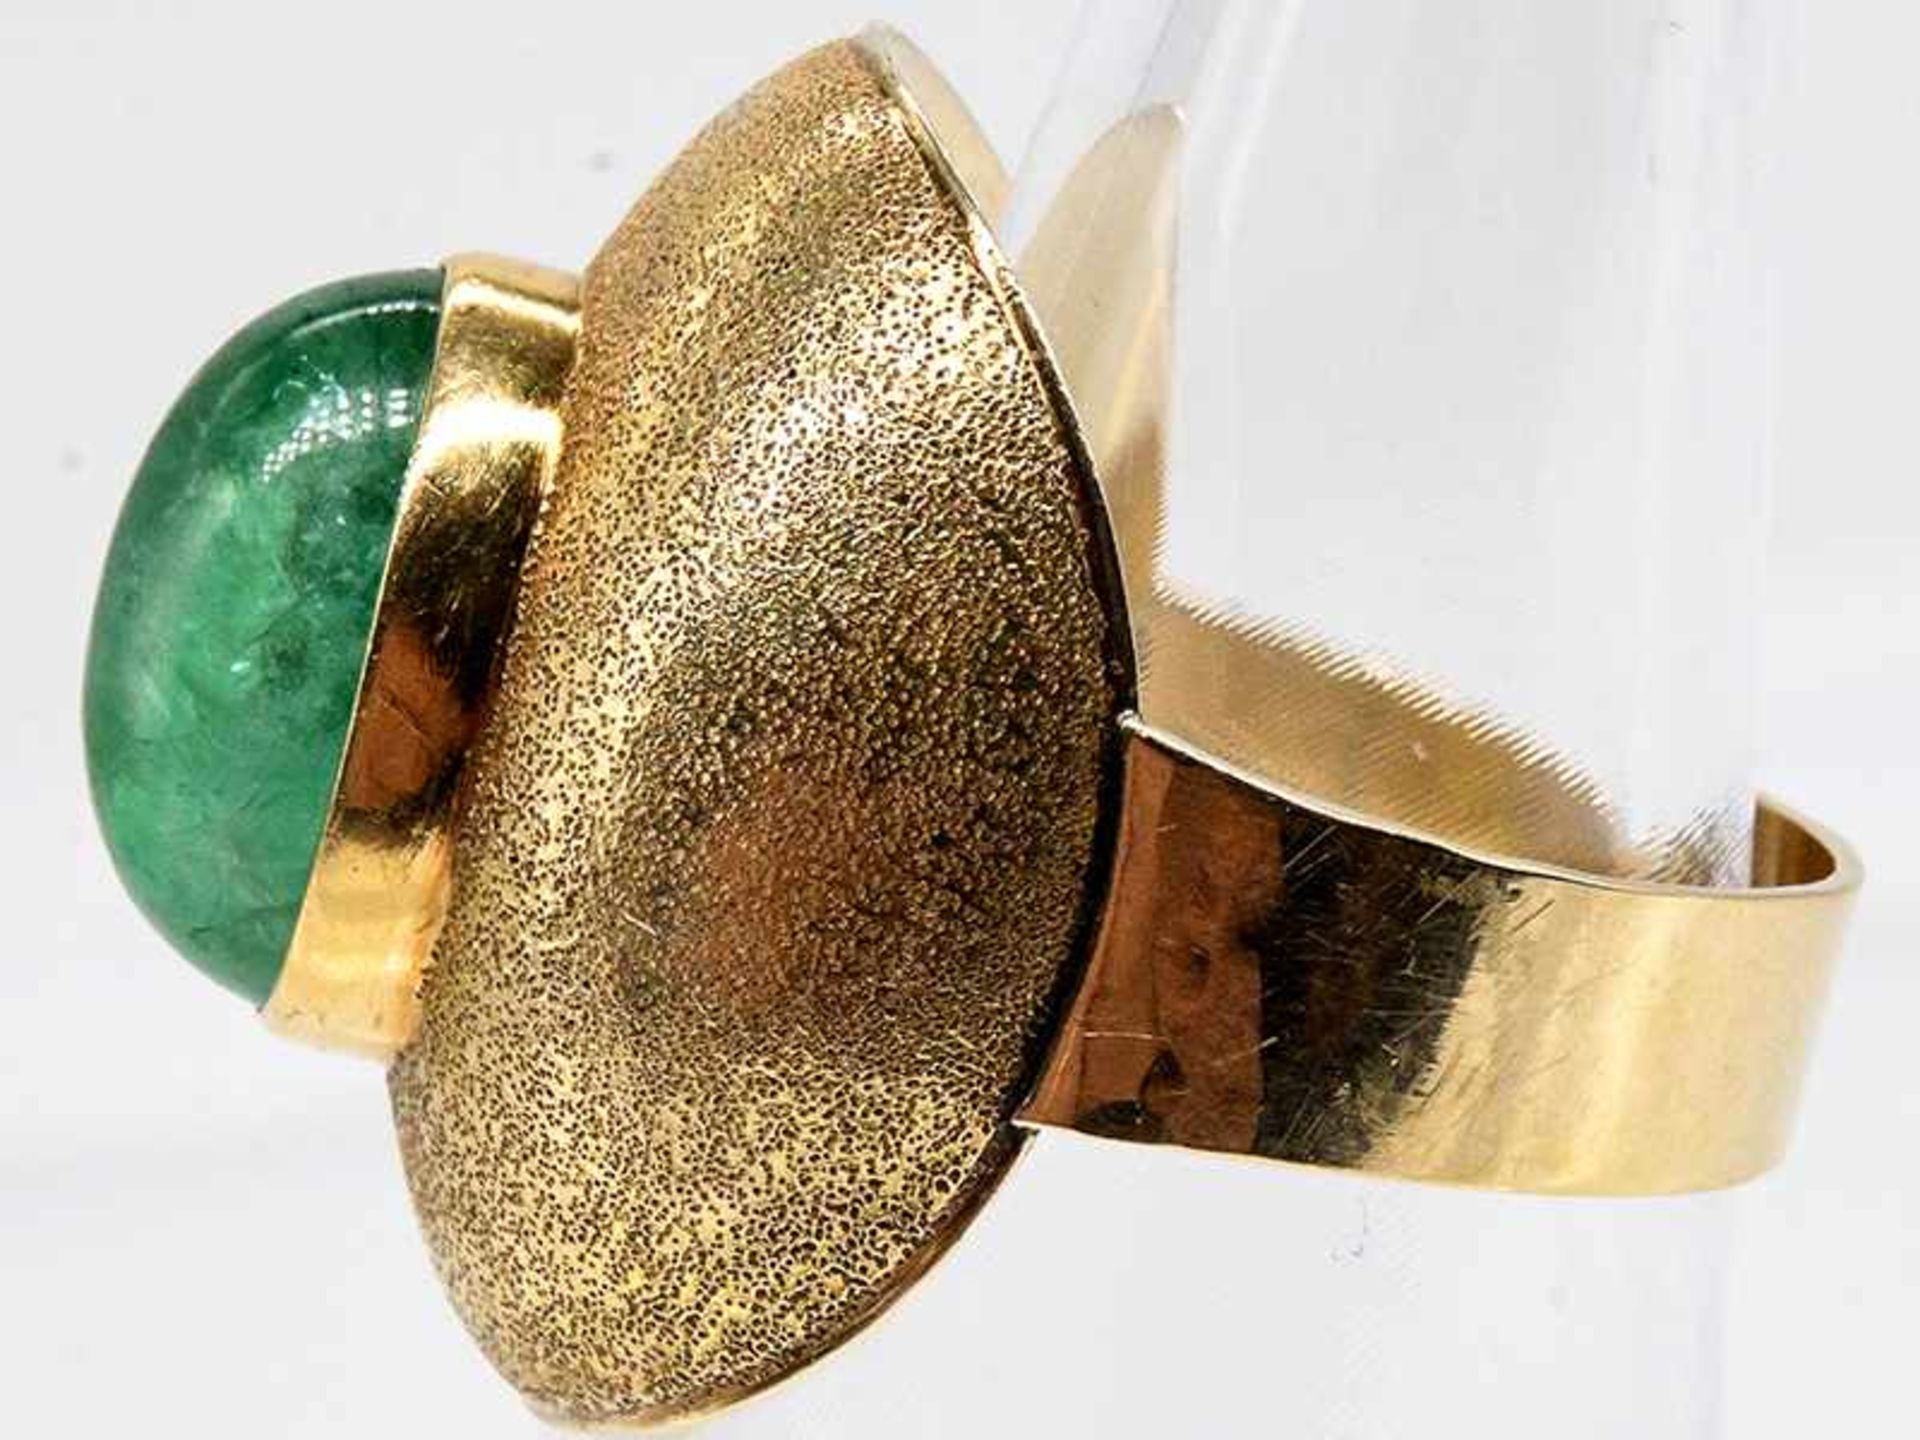 Ring mit Smaragd-Cabochon, Goldschmiedearbeit, 20. Jh. 585/- Gelbgold. Gesamtgewicht ca. 10,1 g. - Bild 3 aus 6